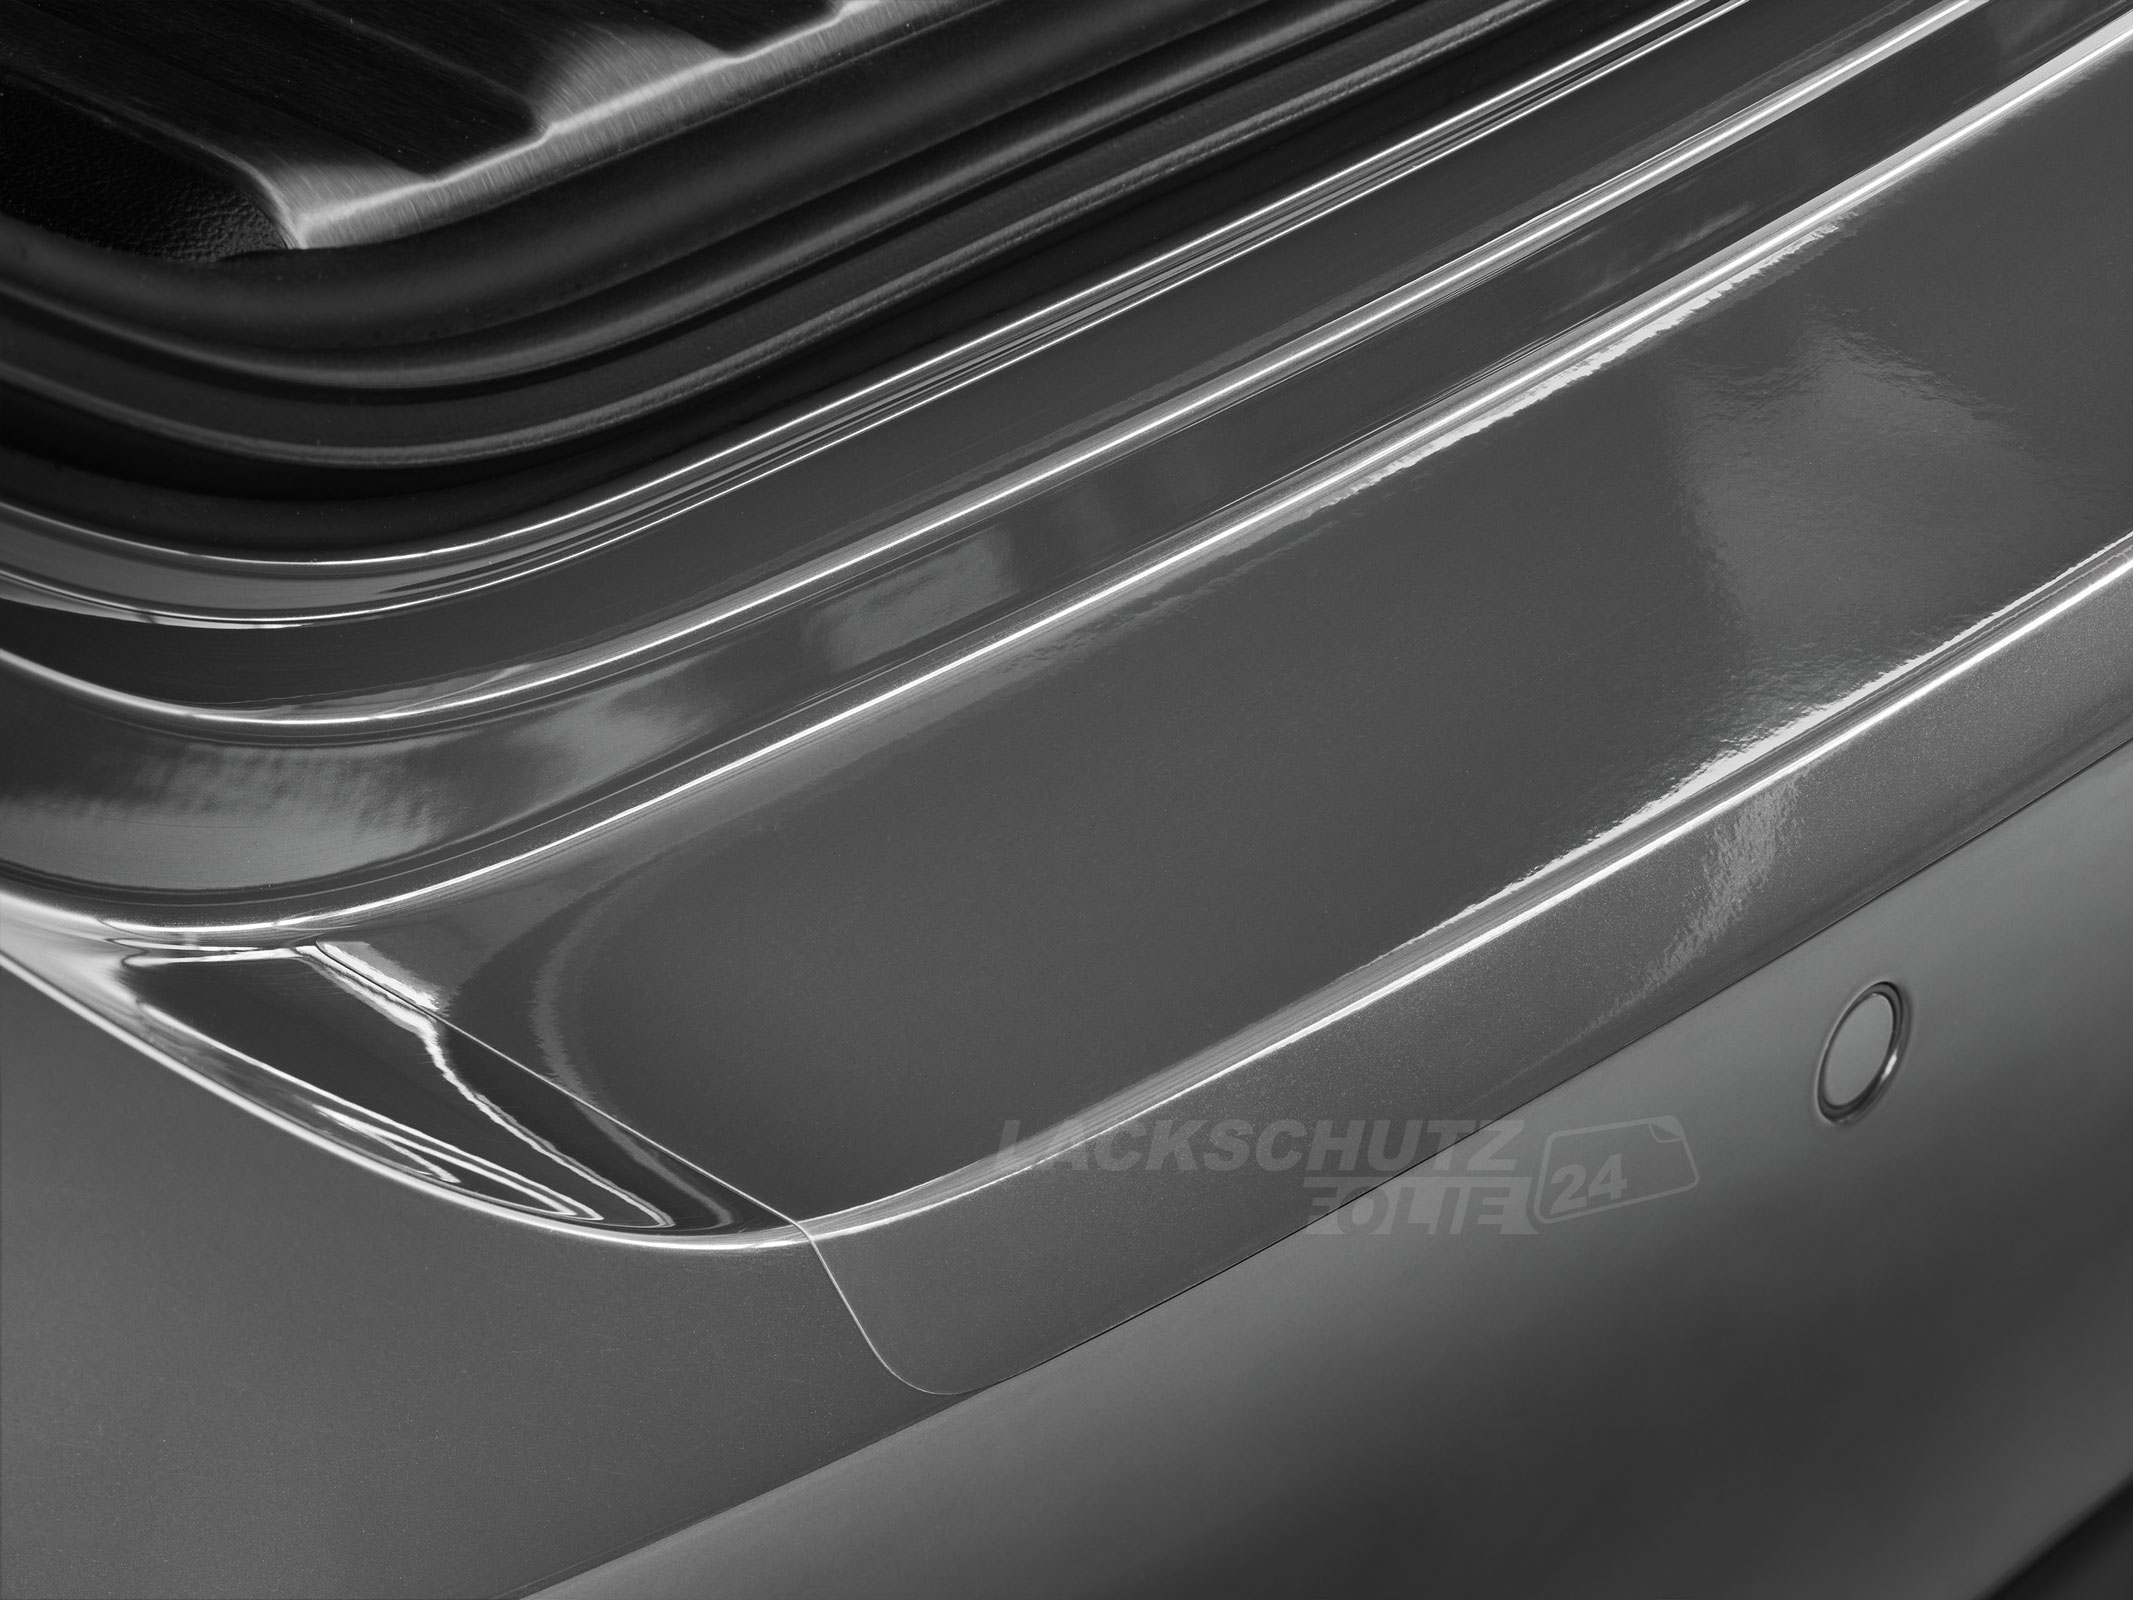 Ladekantenschutzfolie - Transparent Glatt Hochglänzend 150 µm stark für Mitsubishi Eclipse Cross BJ 01/2018-2021